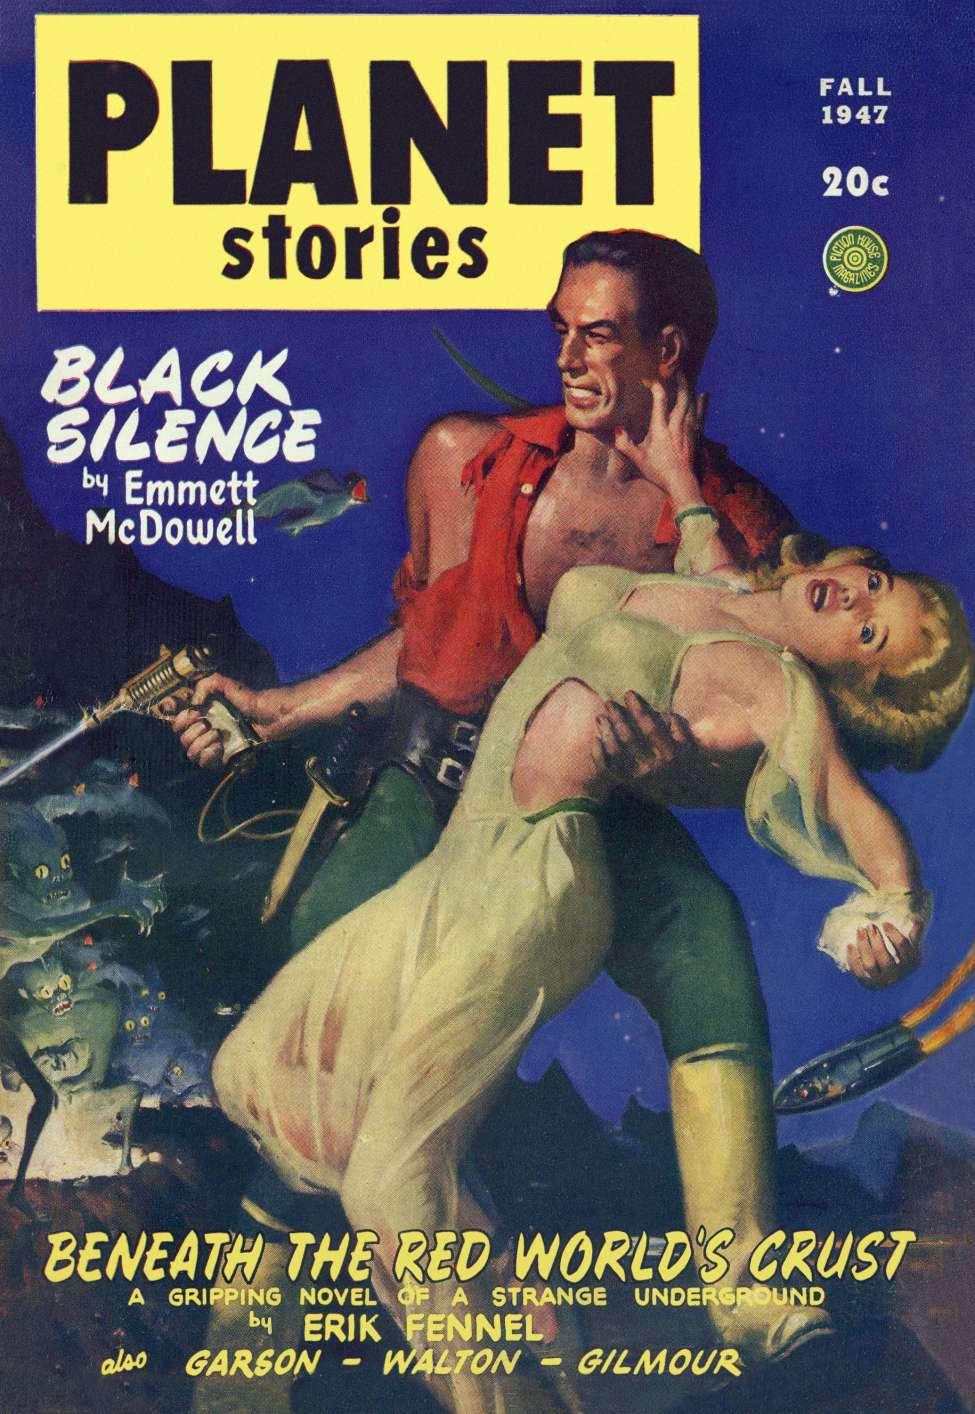 Comic Book Cover For Planet Stories v3 8 - Black Silence - Emmett McDowell